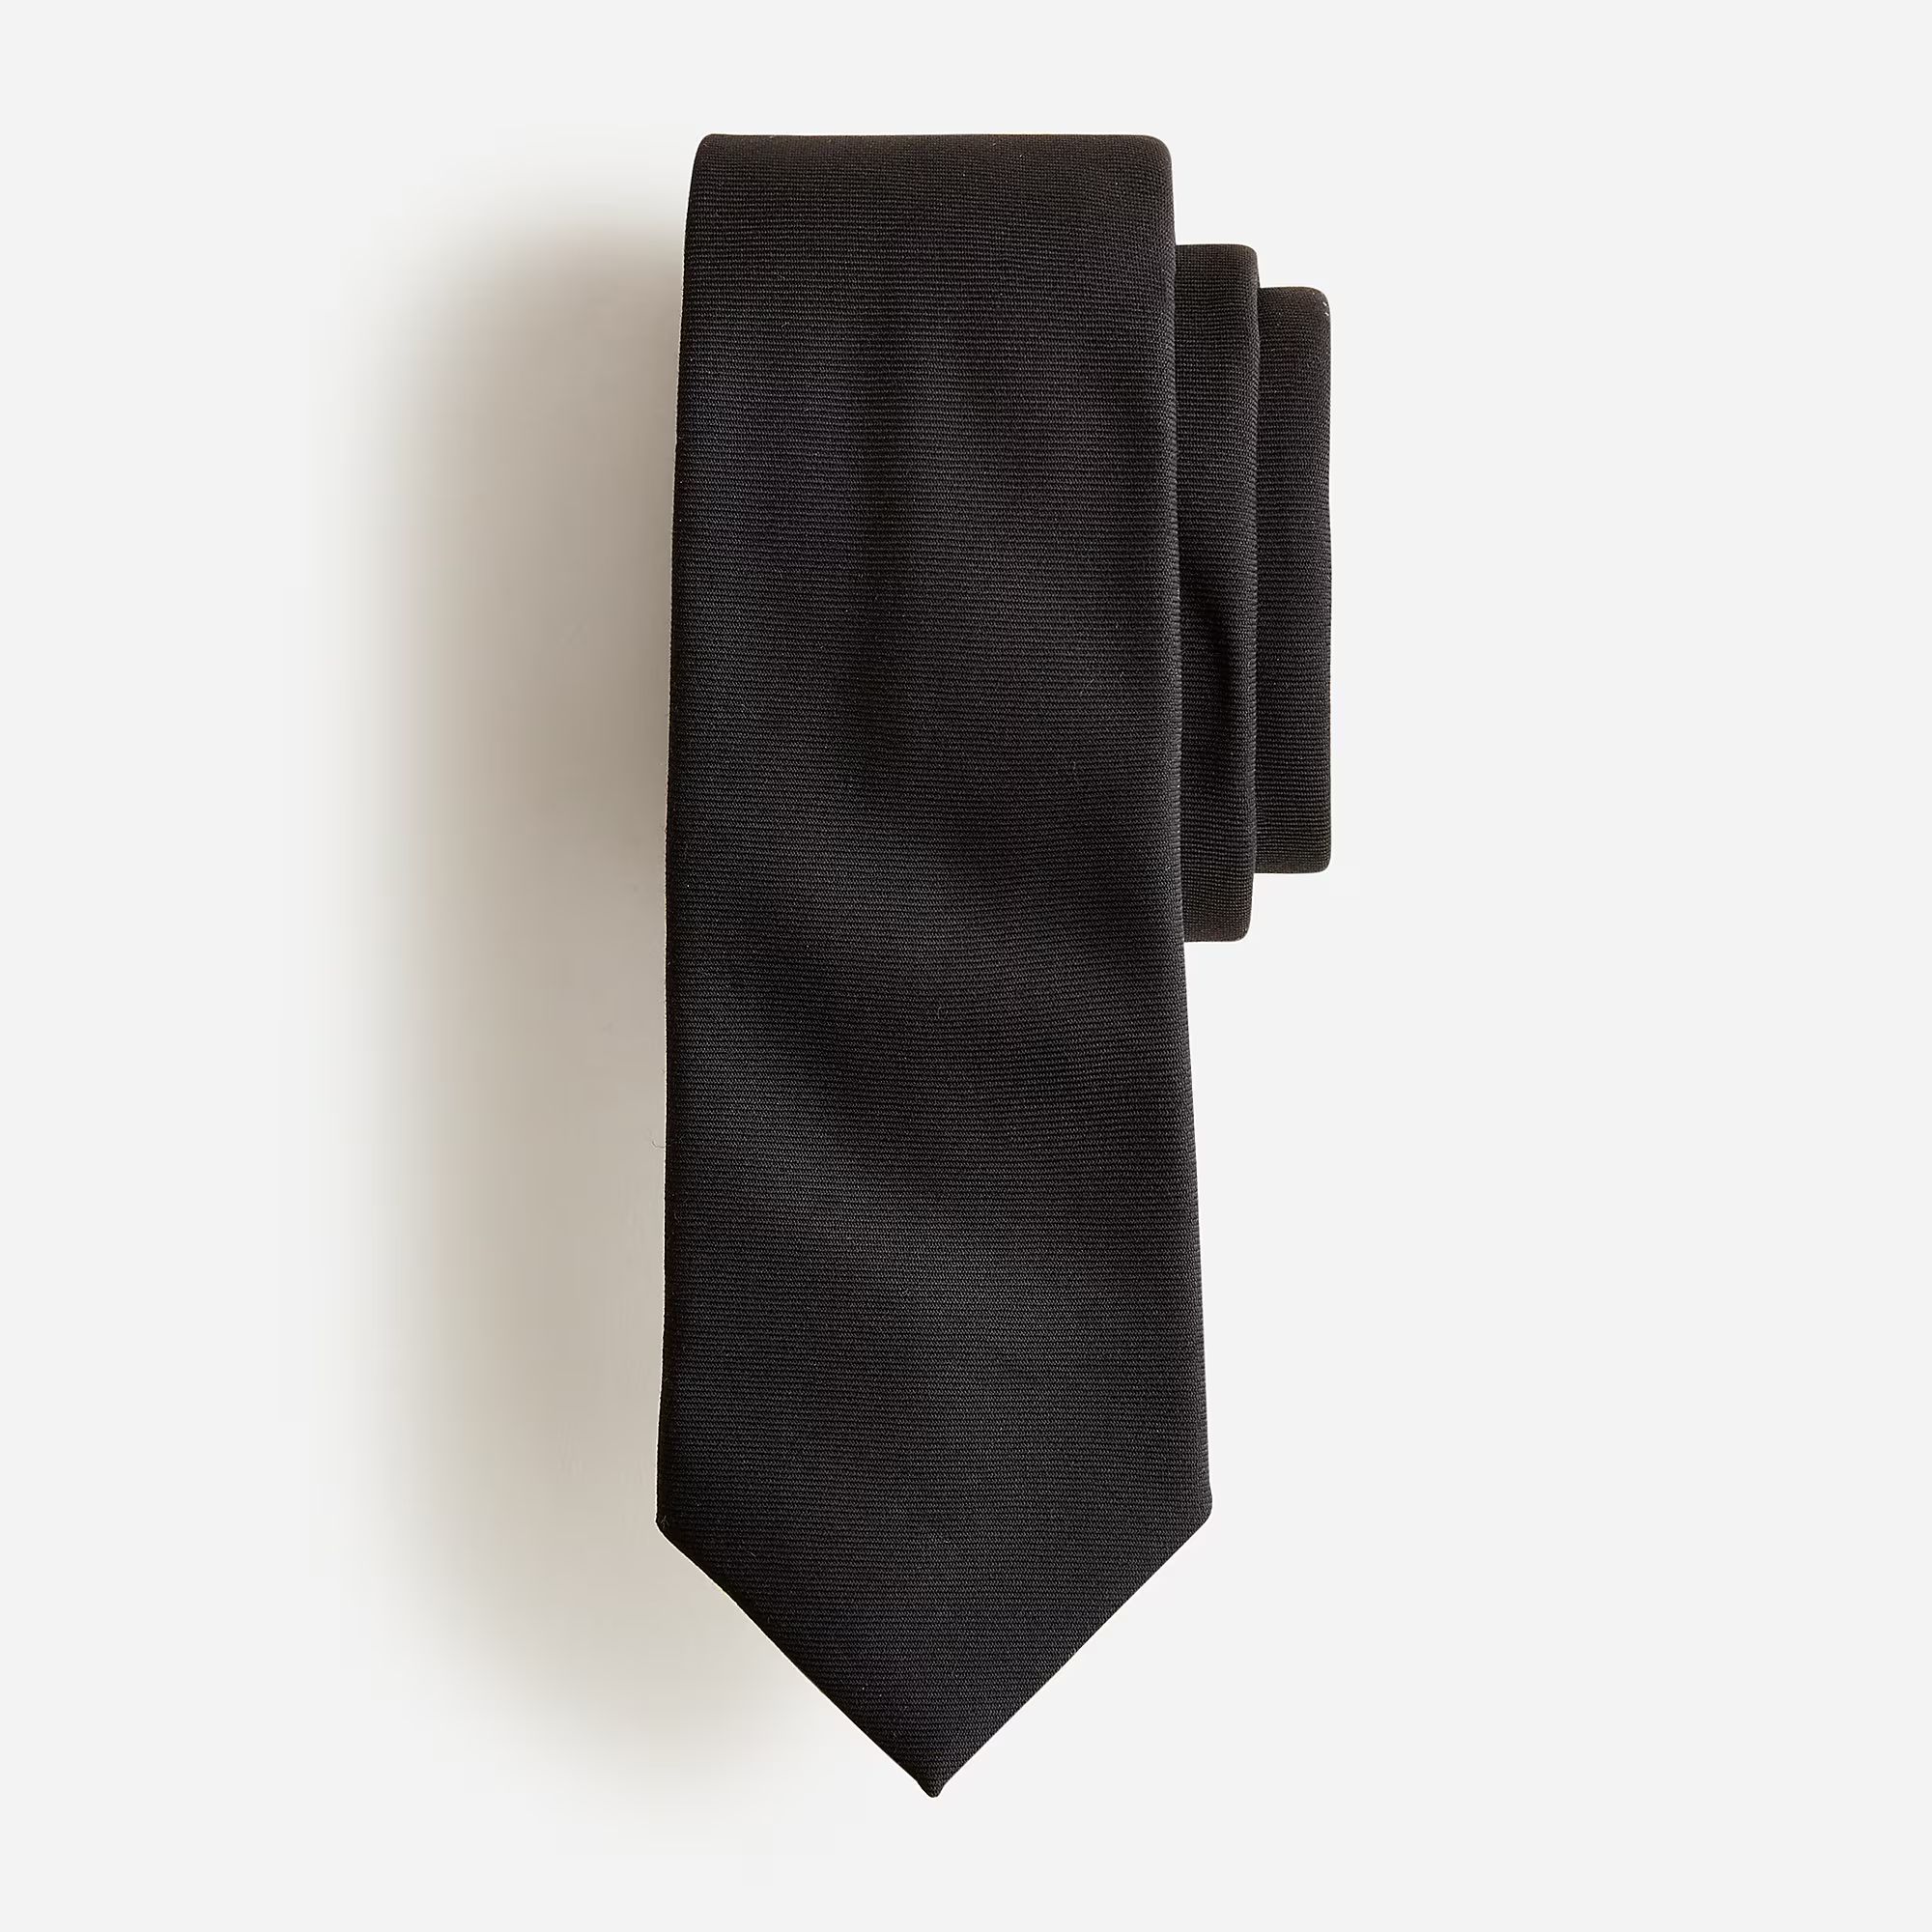 American wool tie in black | J.Crew US